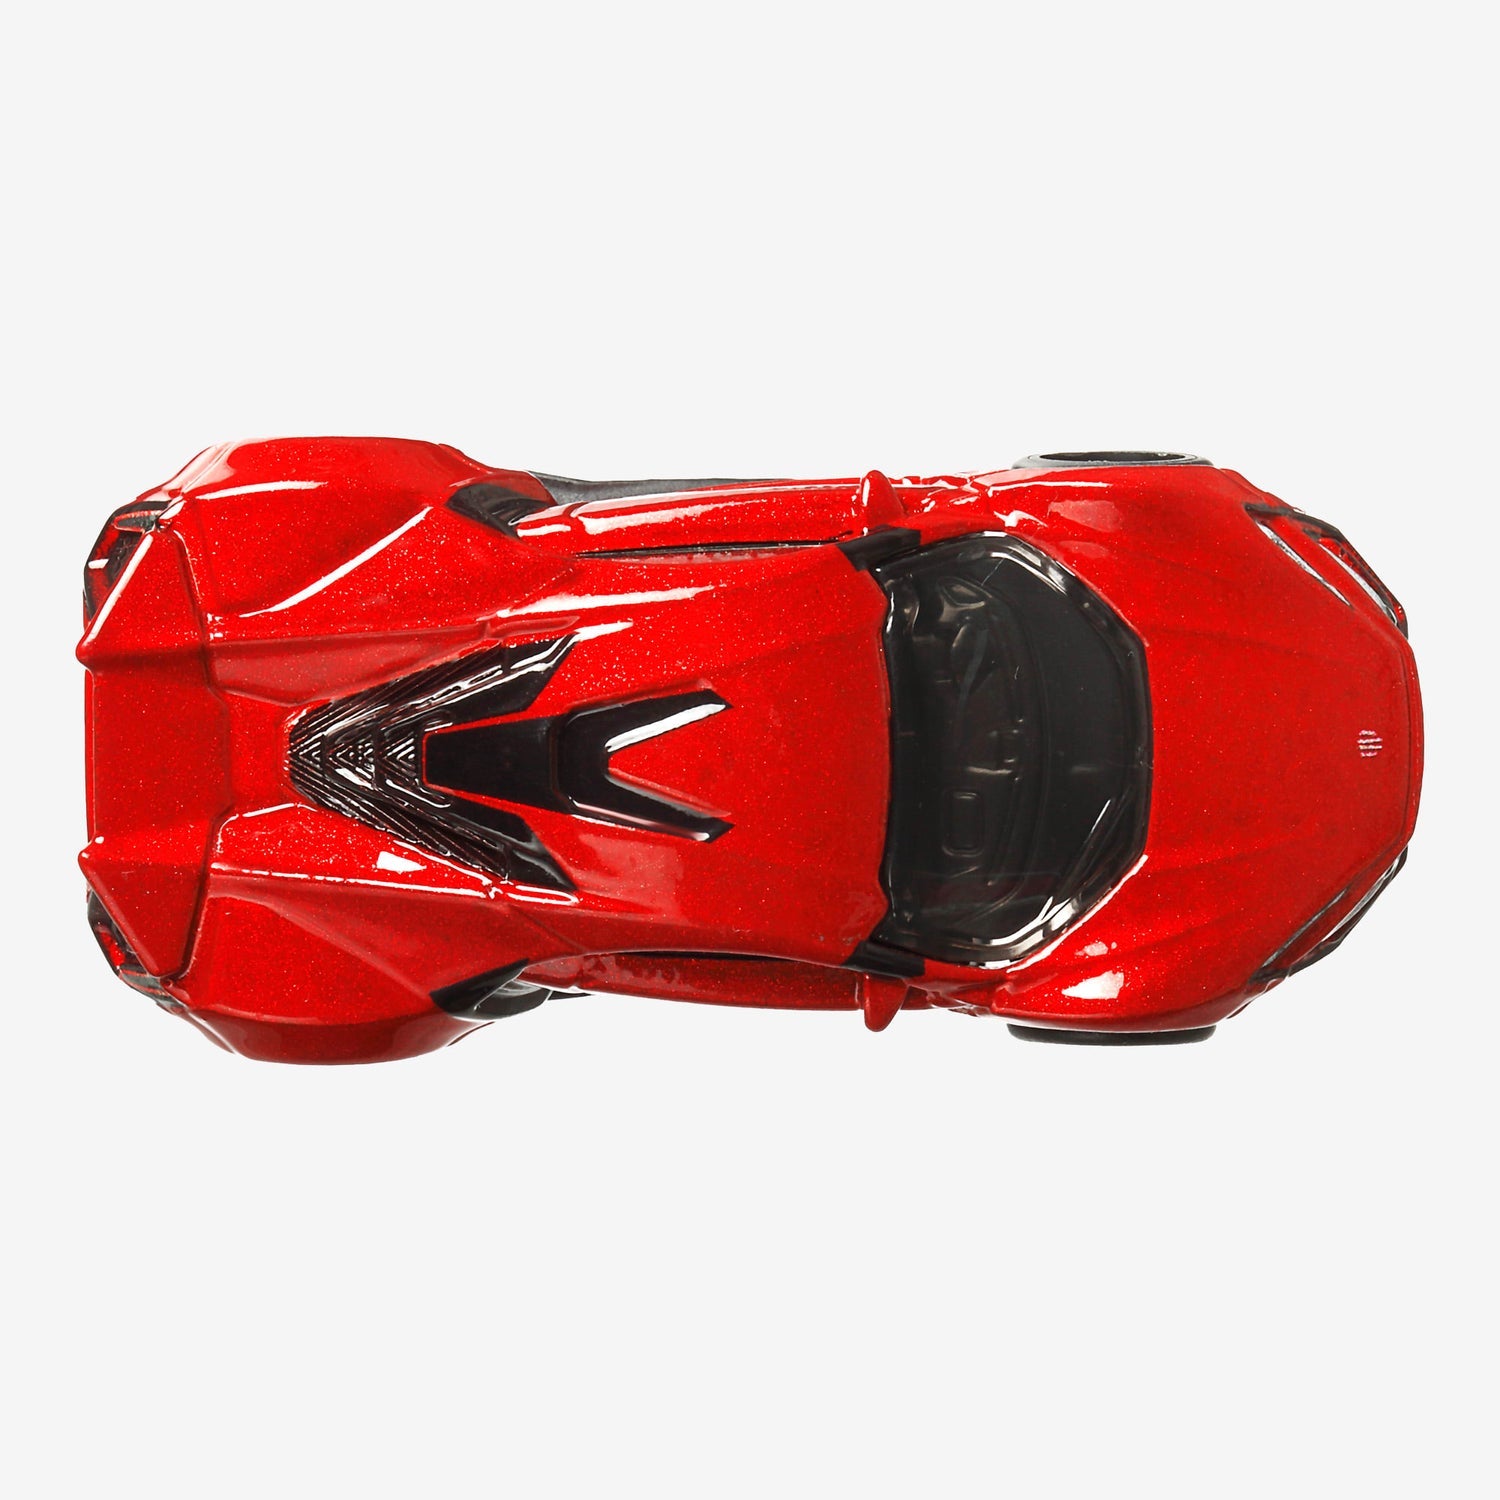 Hot Wheels Premium Fast & Furious Series, Lykan Hypersport